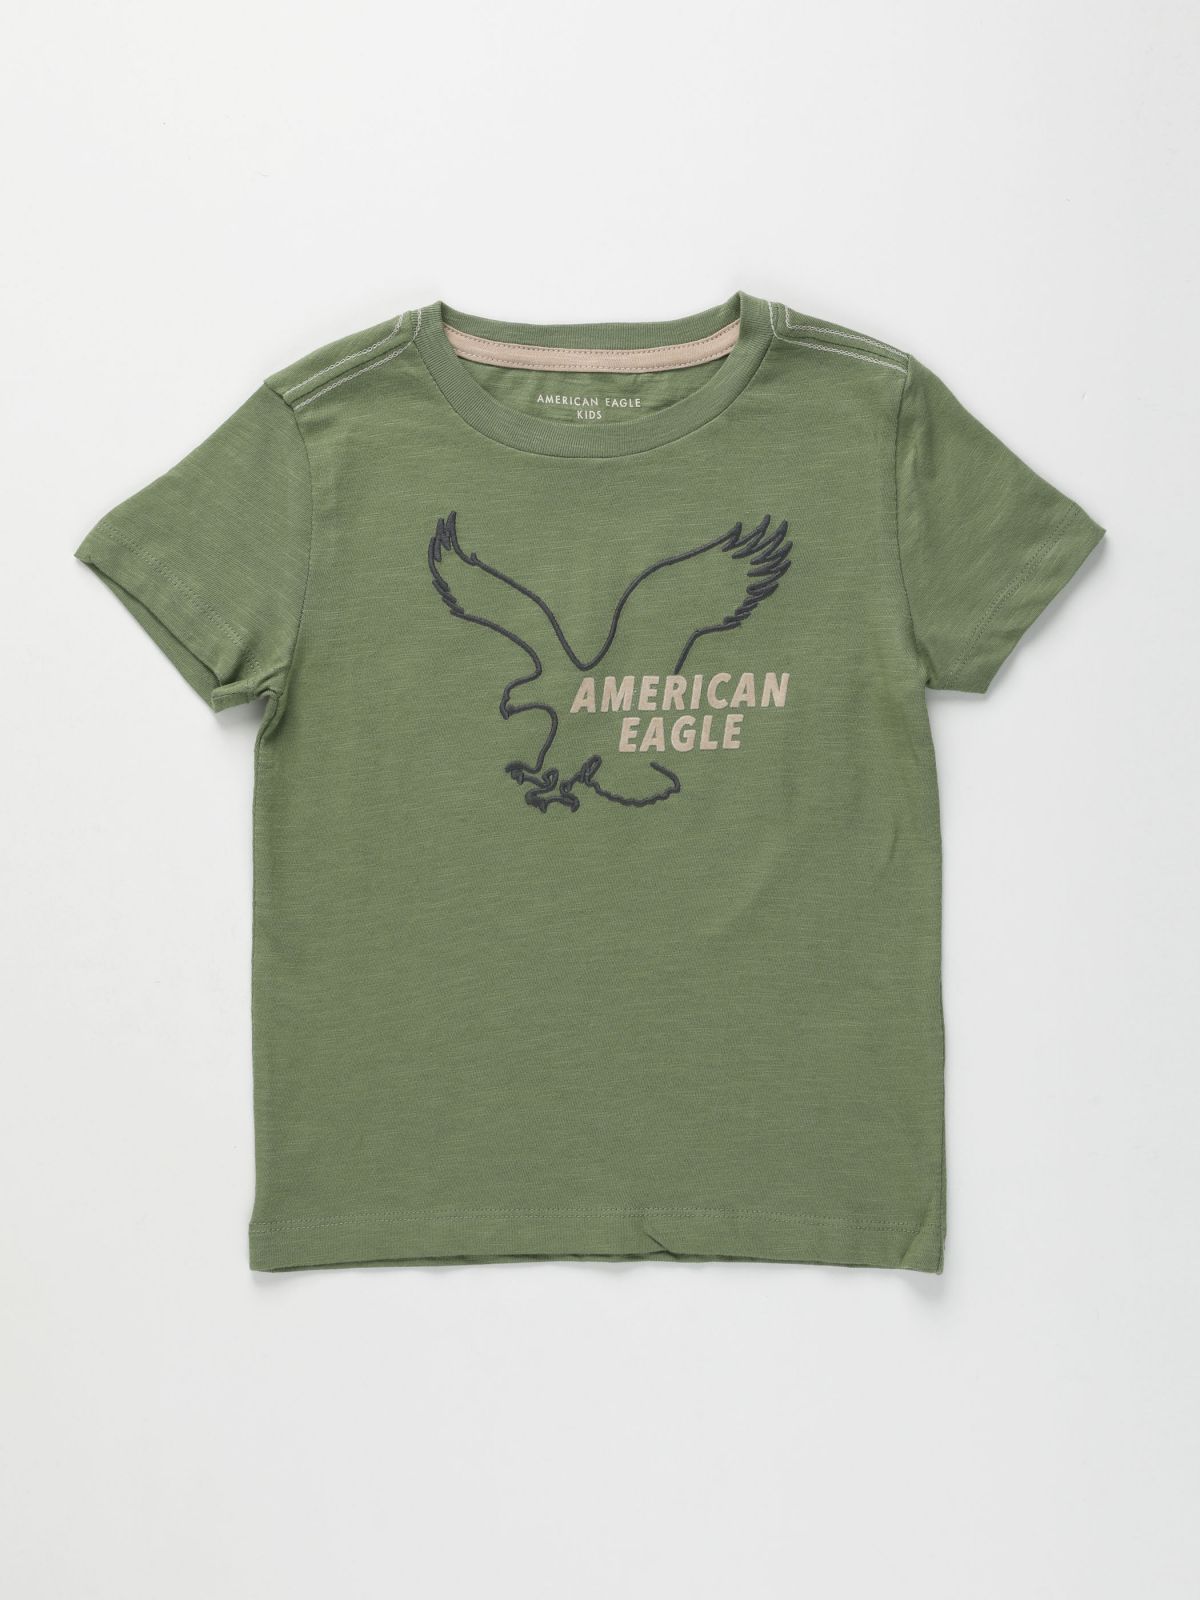  טי שירט עם לוגו / בנים של AMERICAN EAGLE